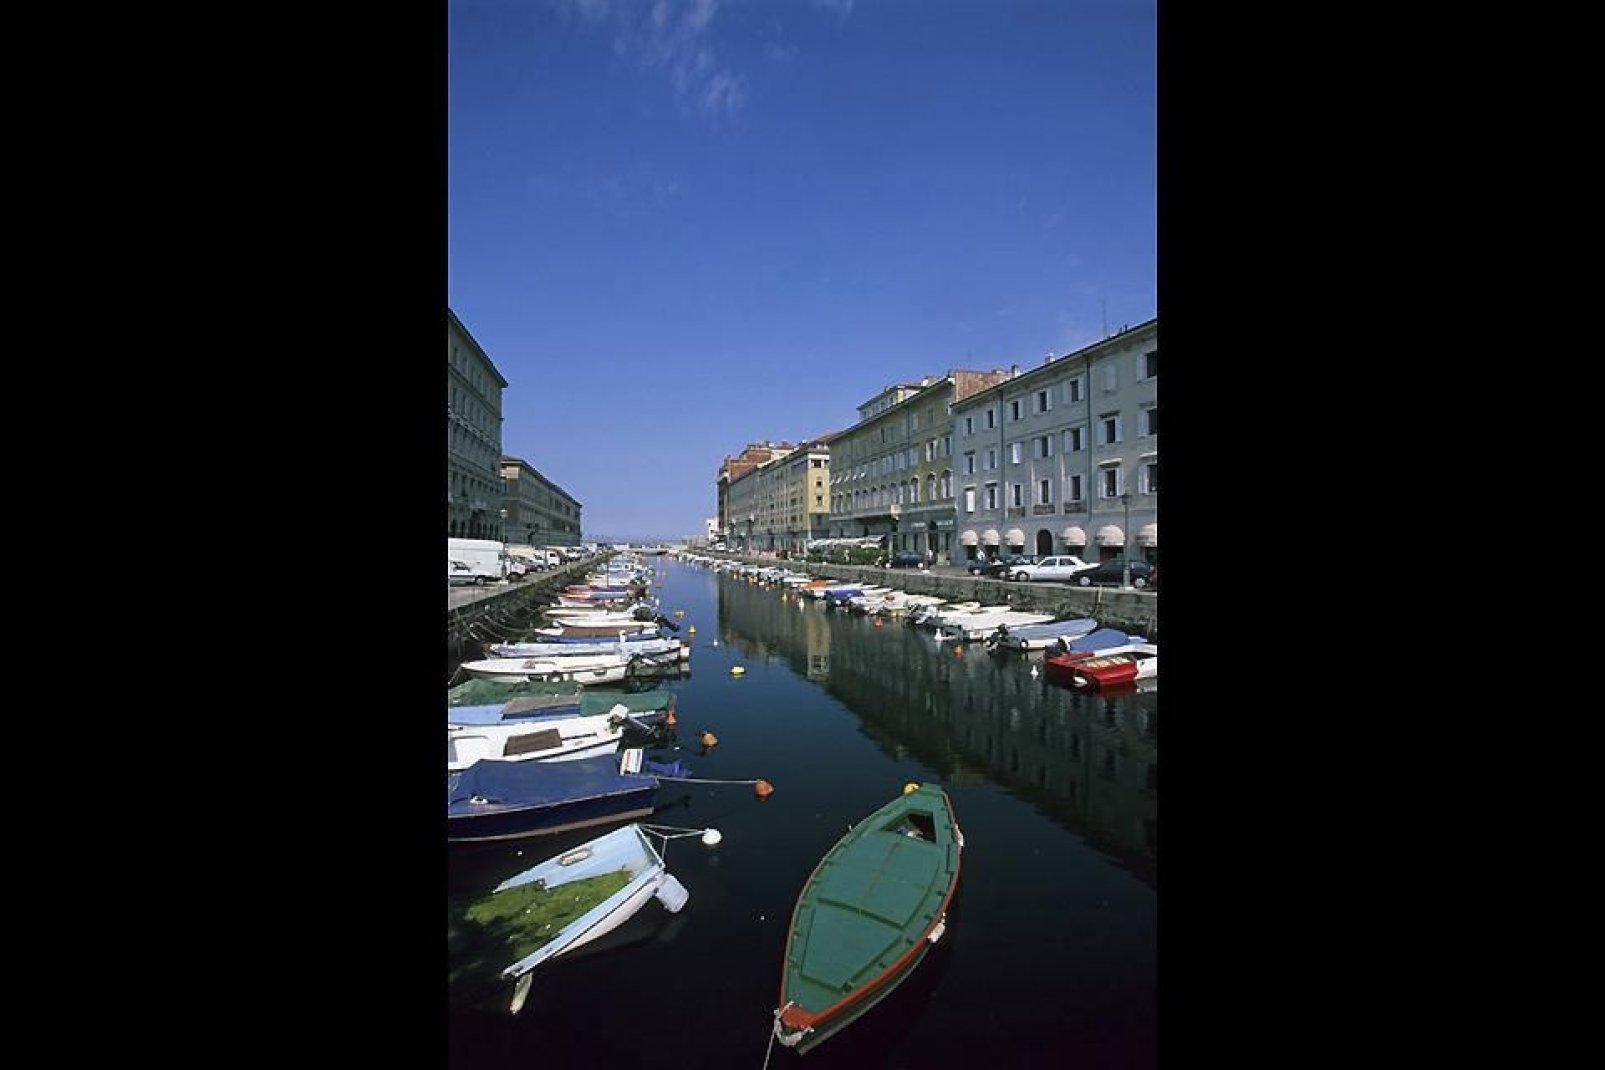 El corazón de la capital del Véneto juliano posee unos edificios y puentes históricos que dan al canal.